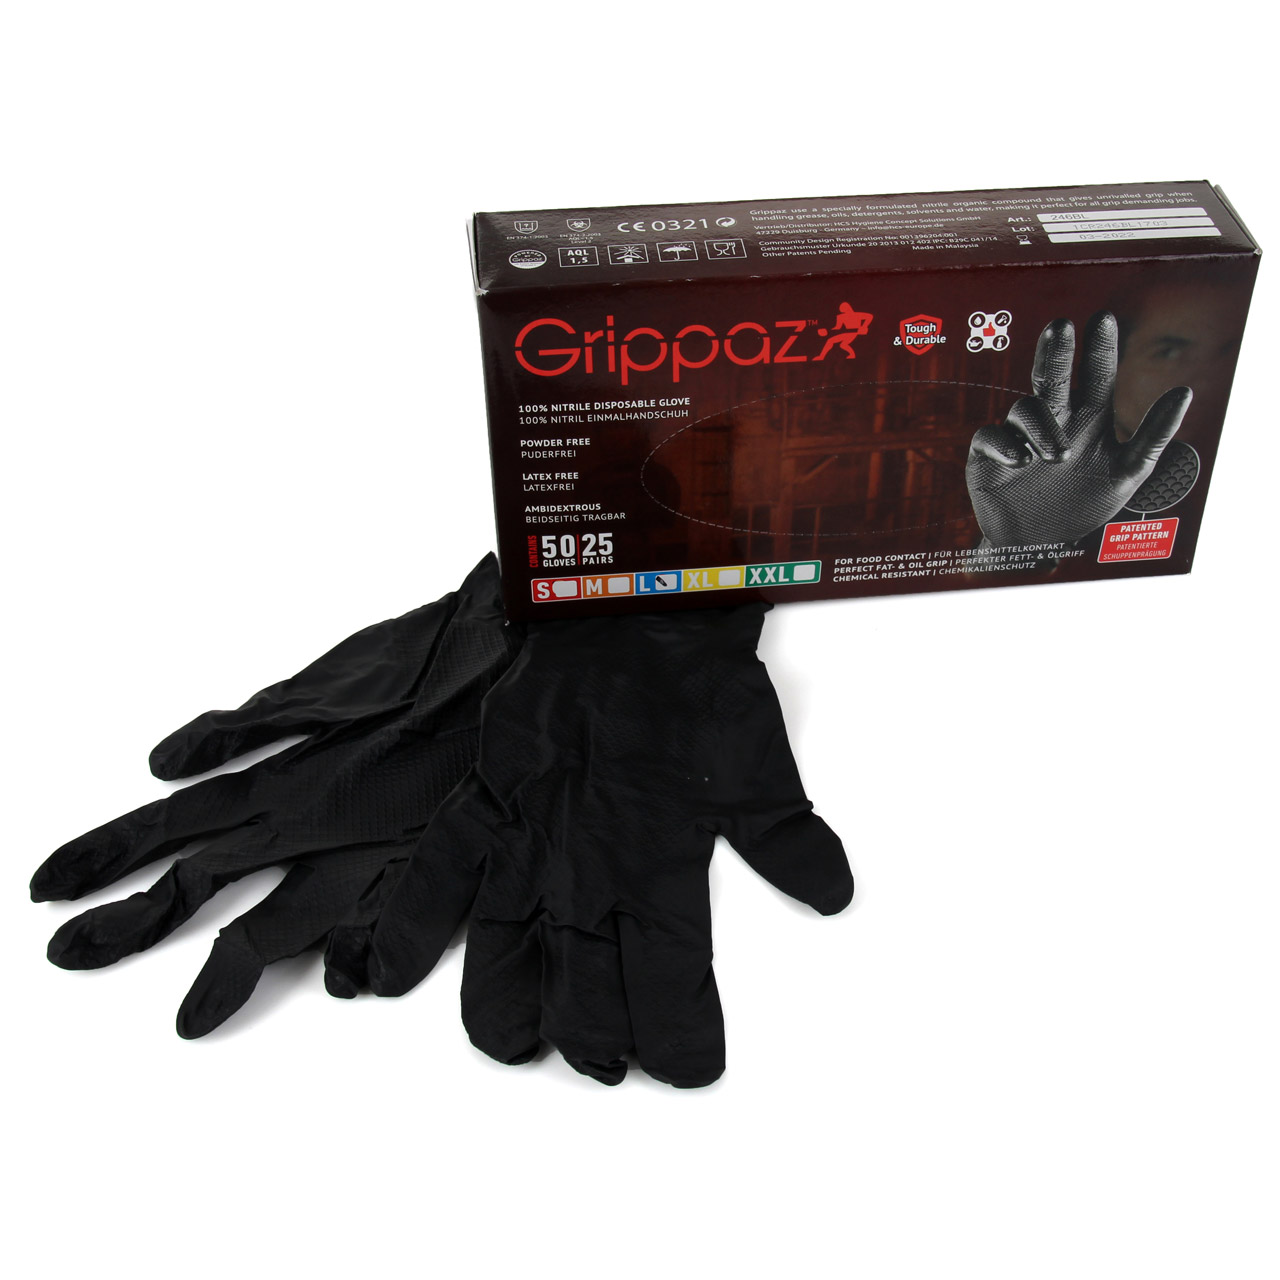 GRIPPAZ 246 Schutzhandschuhe NITRIL Handschuhe SCHWARZ Größe L (50 Stück)